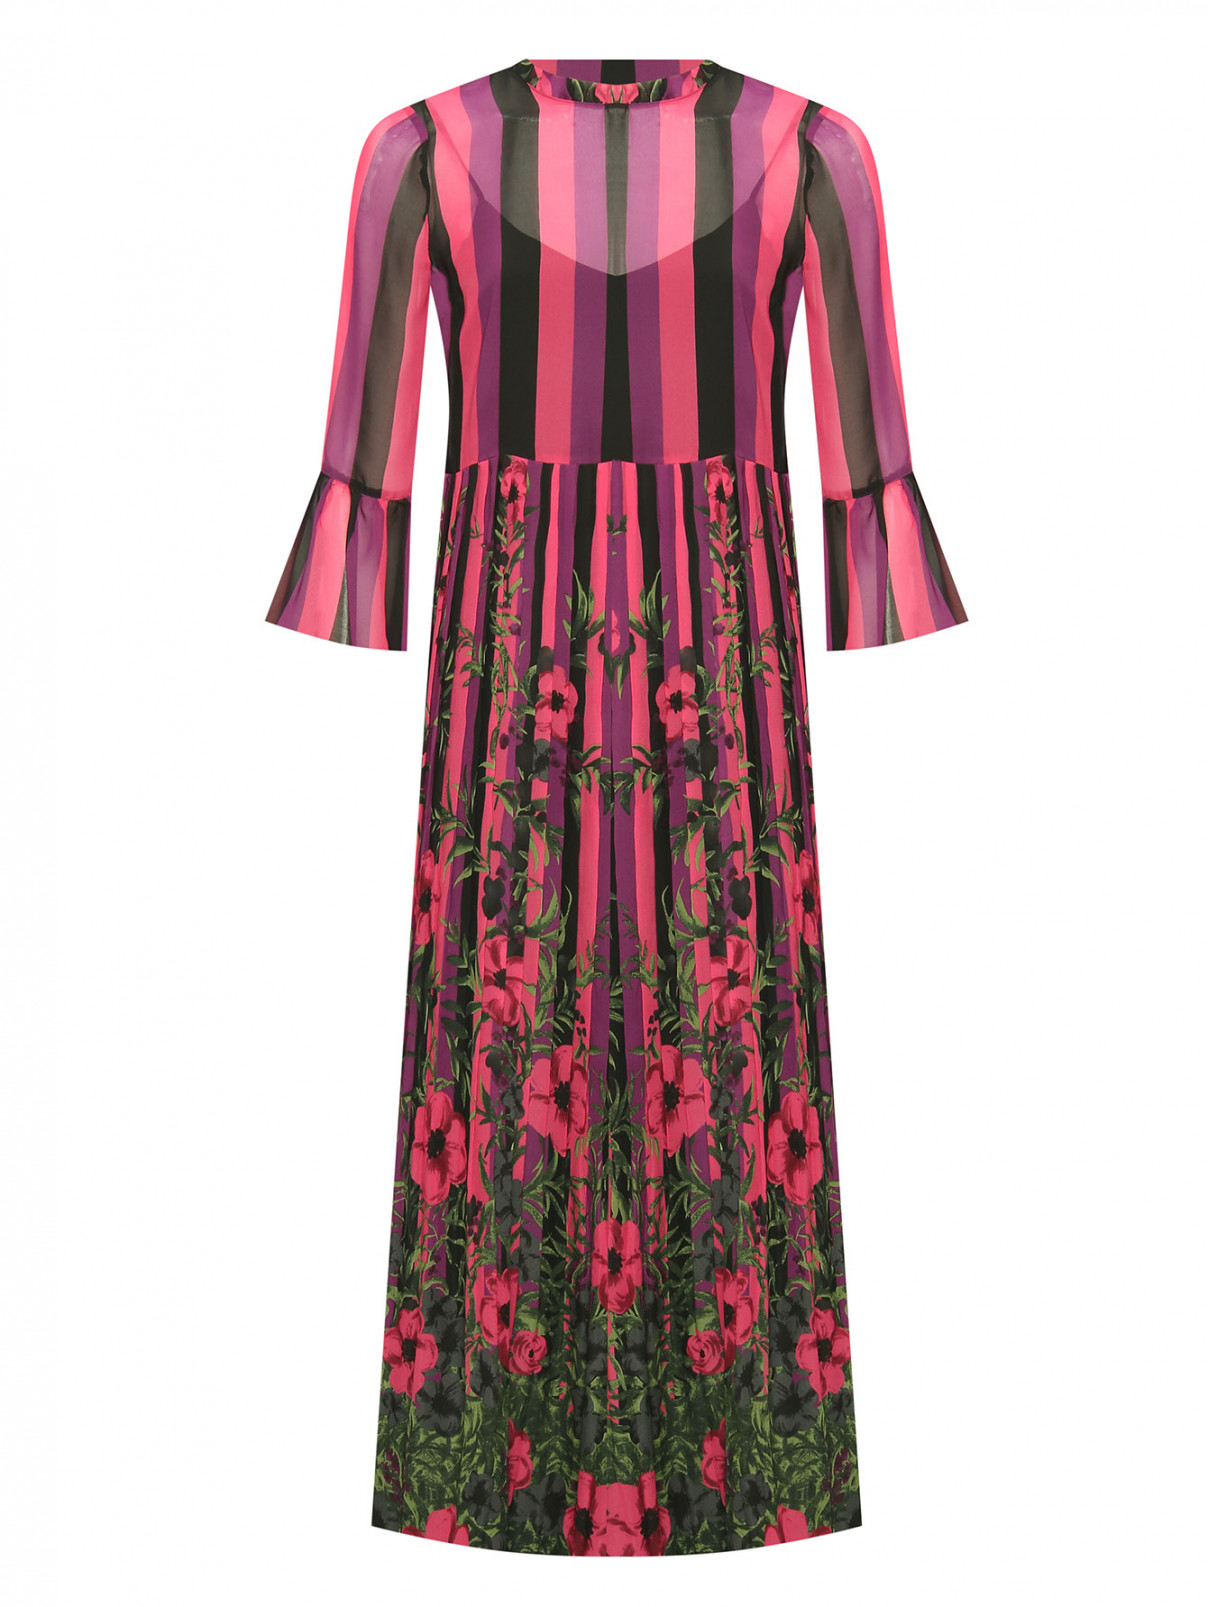 Яркое платье в полоску с юбкой плиссе TWINSET  –  Общий вид  – Цвет:  Мультиколор